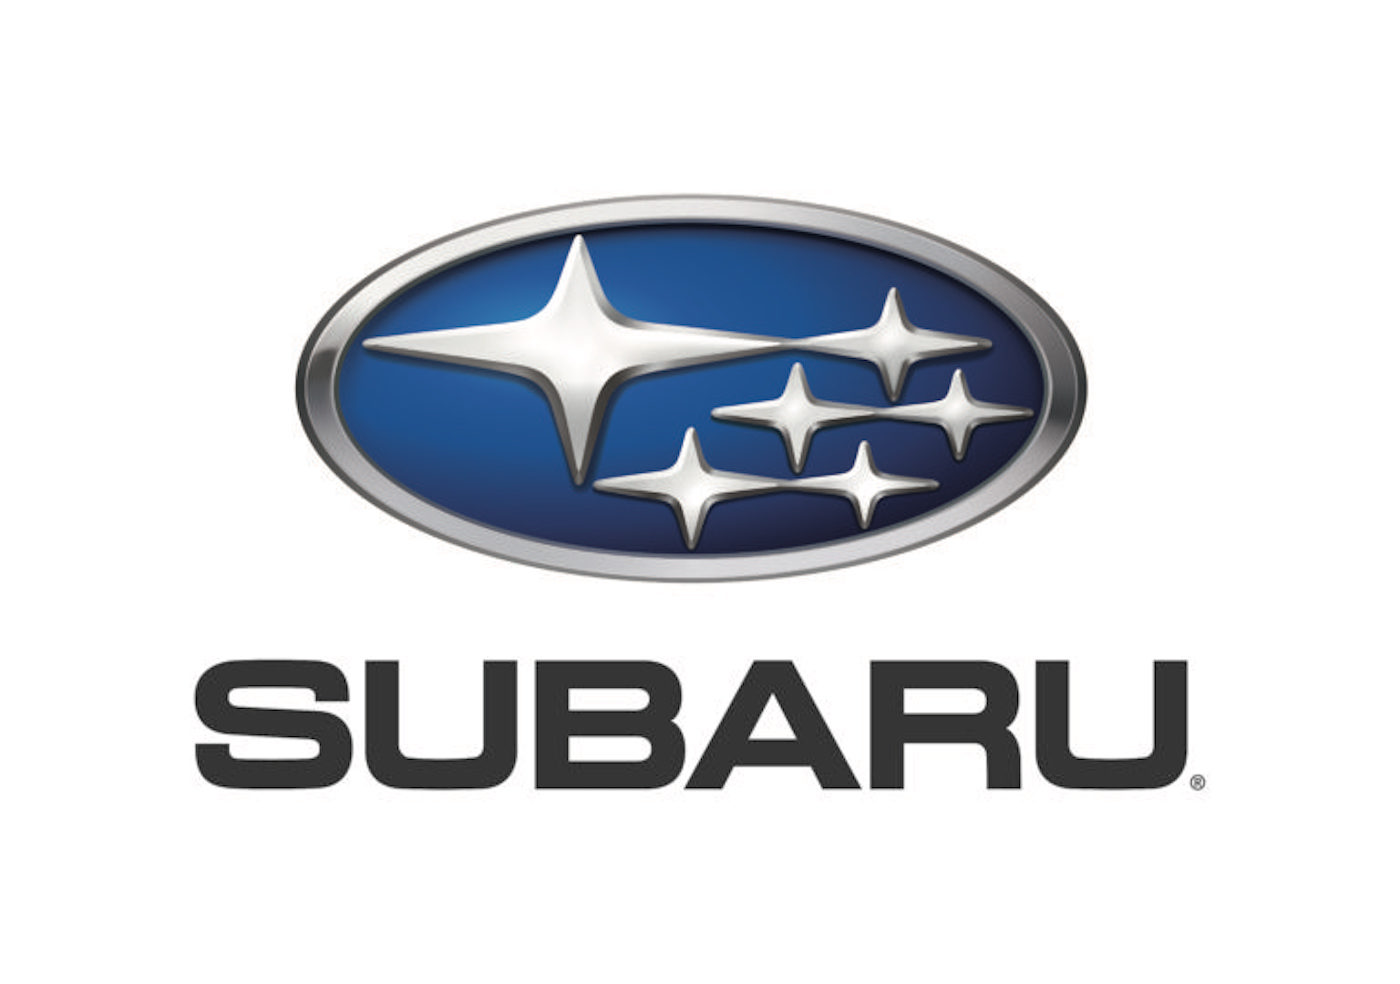 Logotipo de Subaru